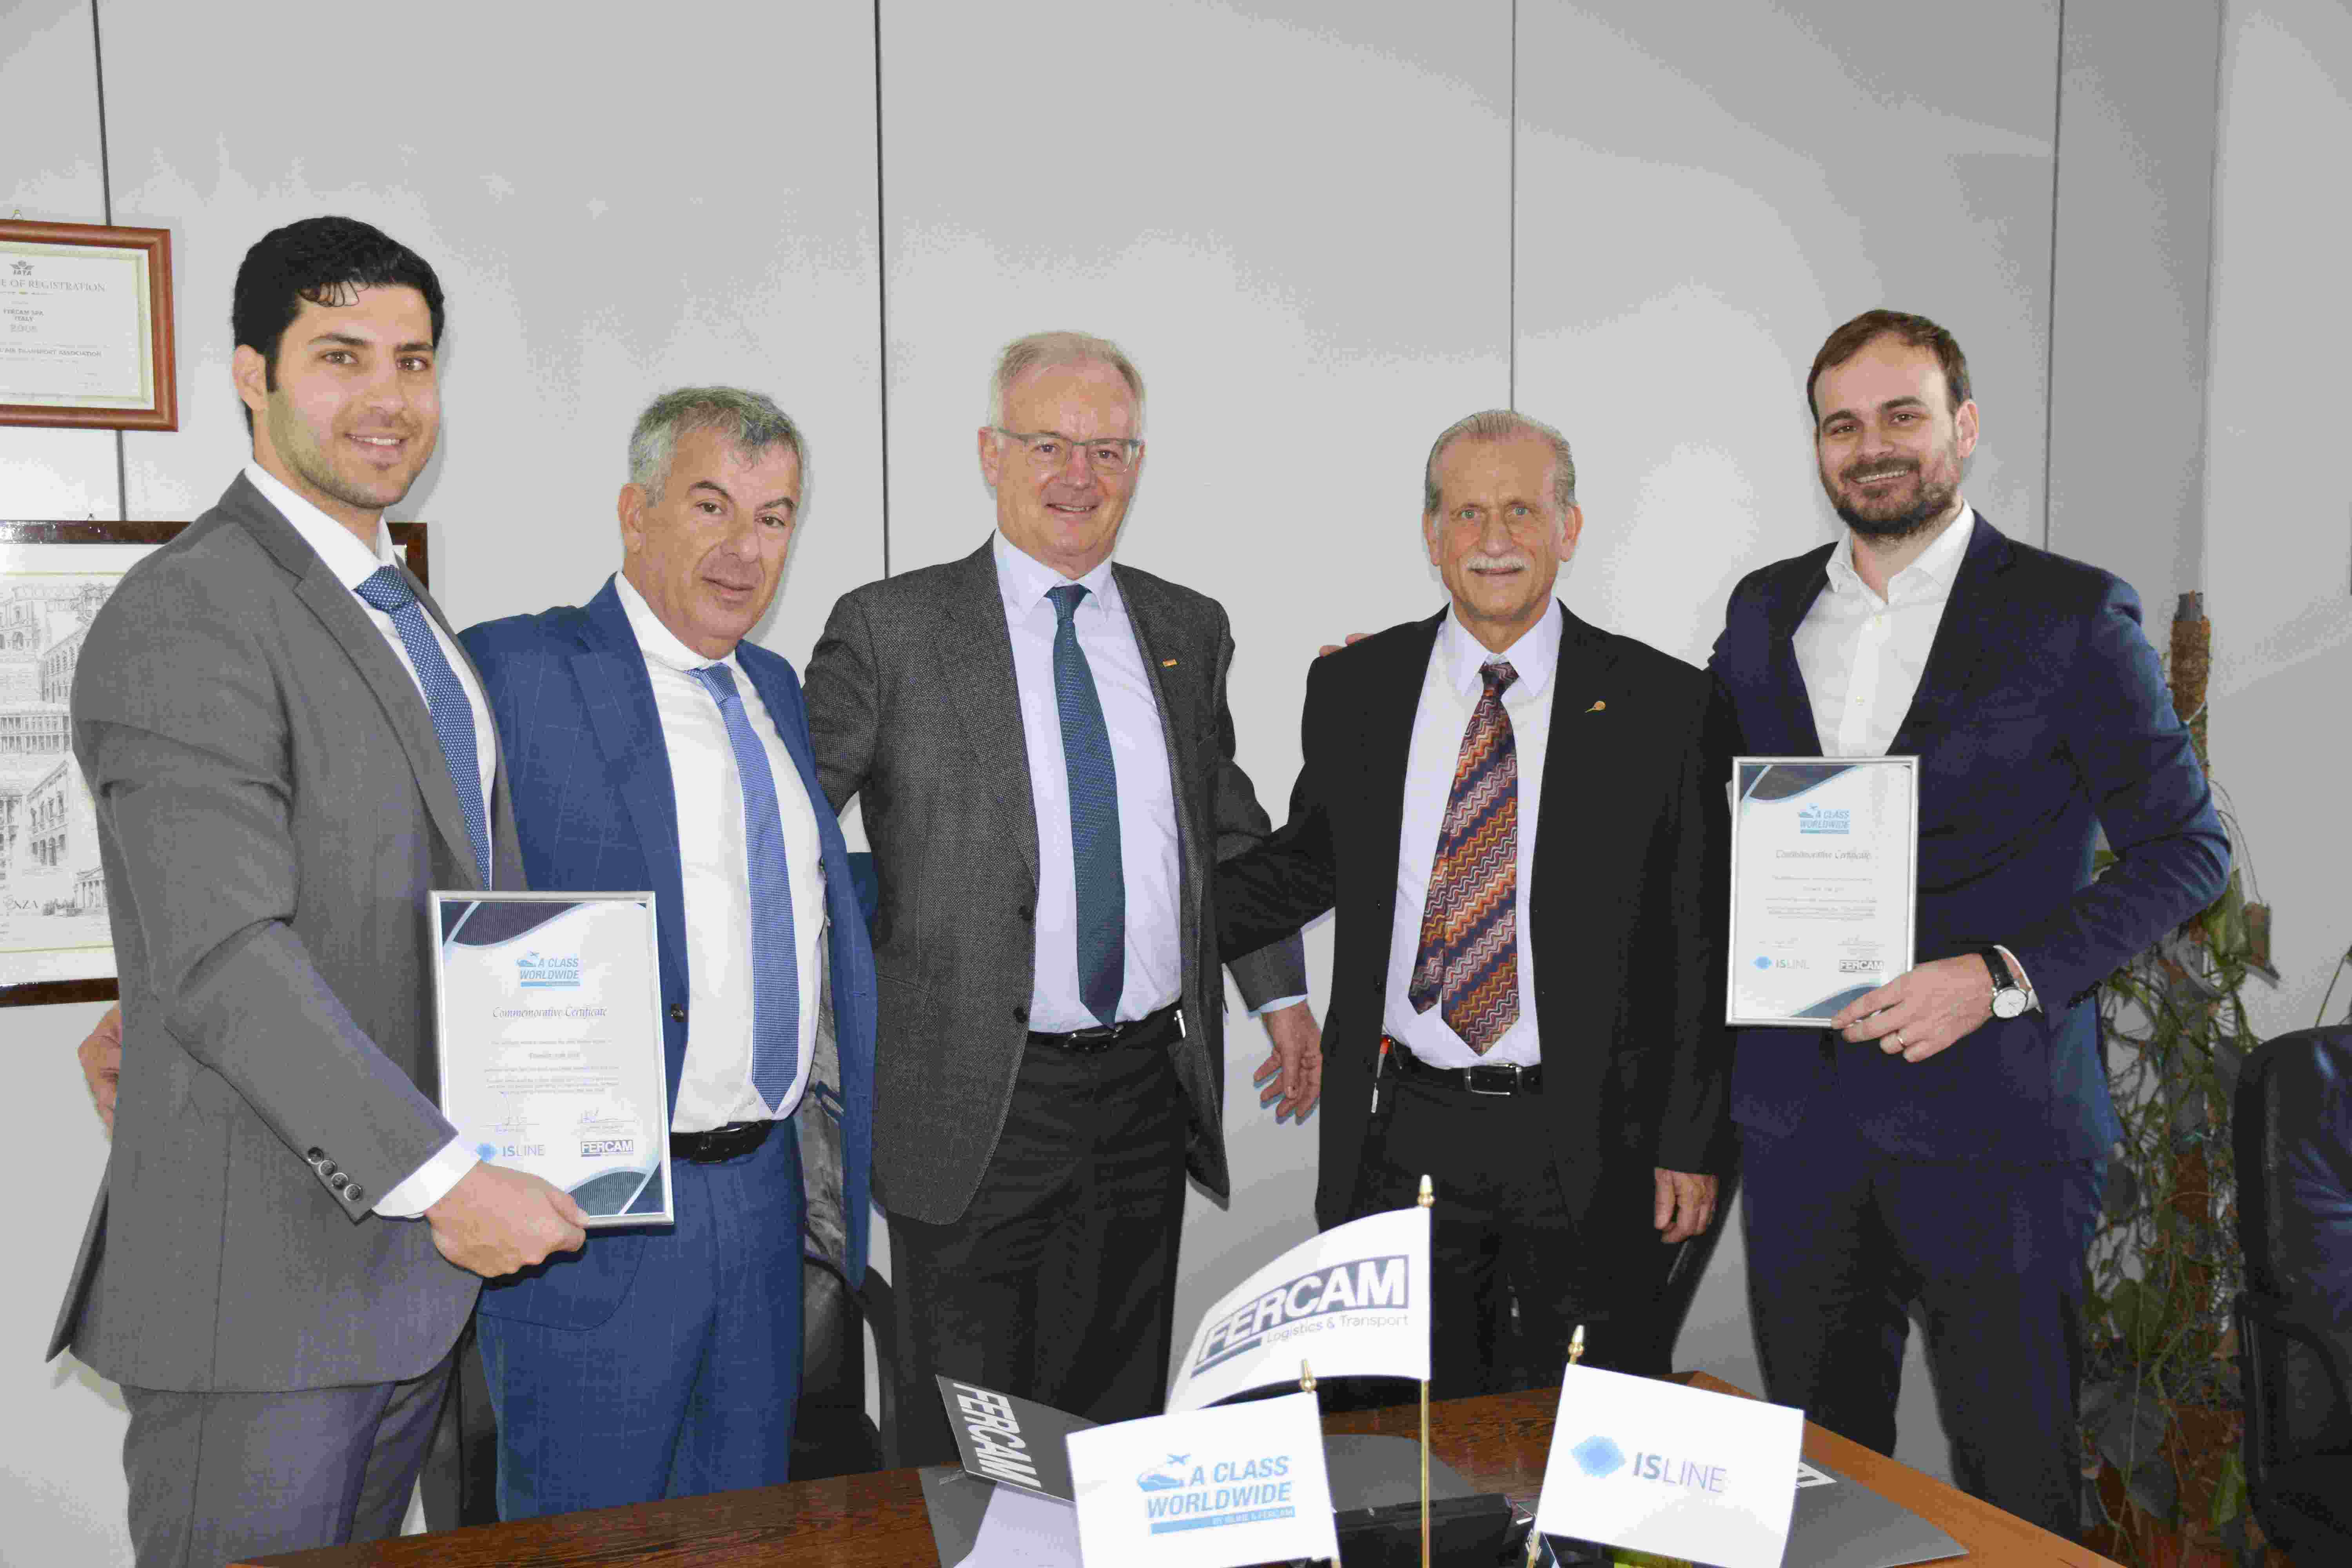 Fercam und Isline: Joint Venture für Luft- und Seefracht